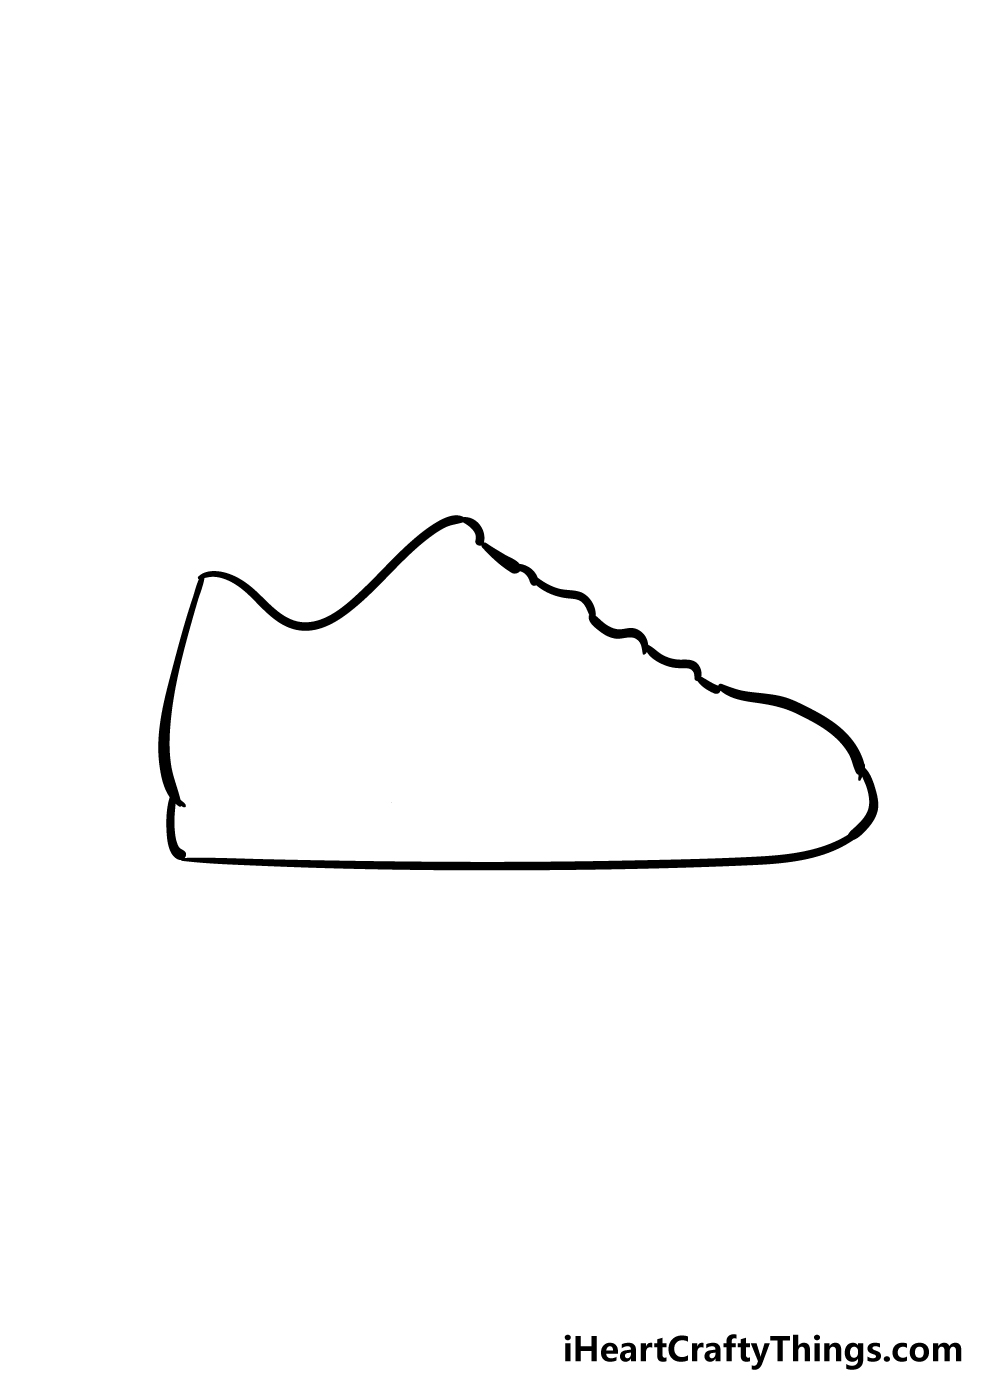 Shoes2 - Hướng dẫn Cách vẽ đôi giày đơn giản với 6 bước cơ bản